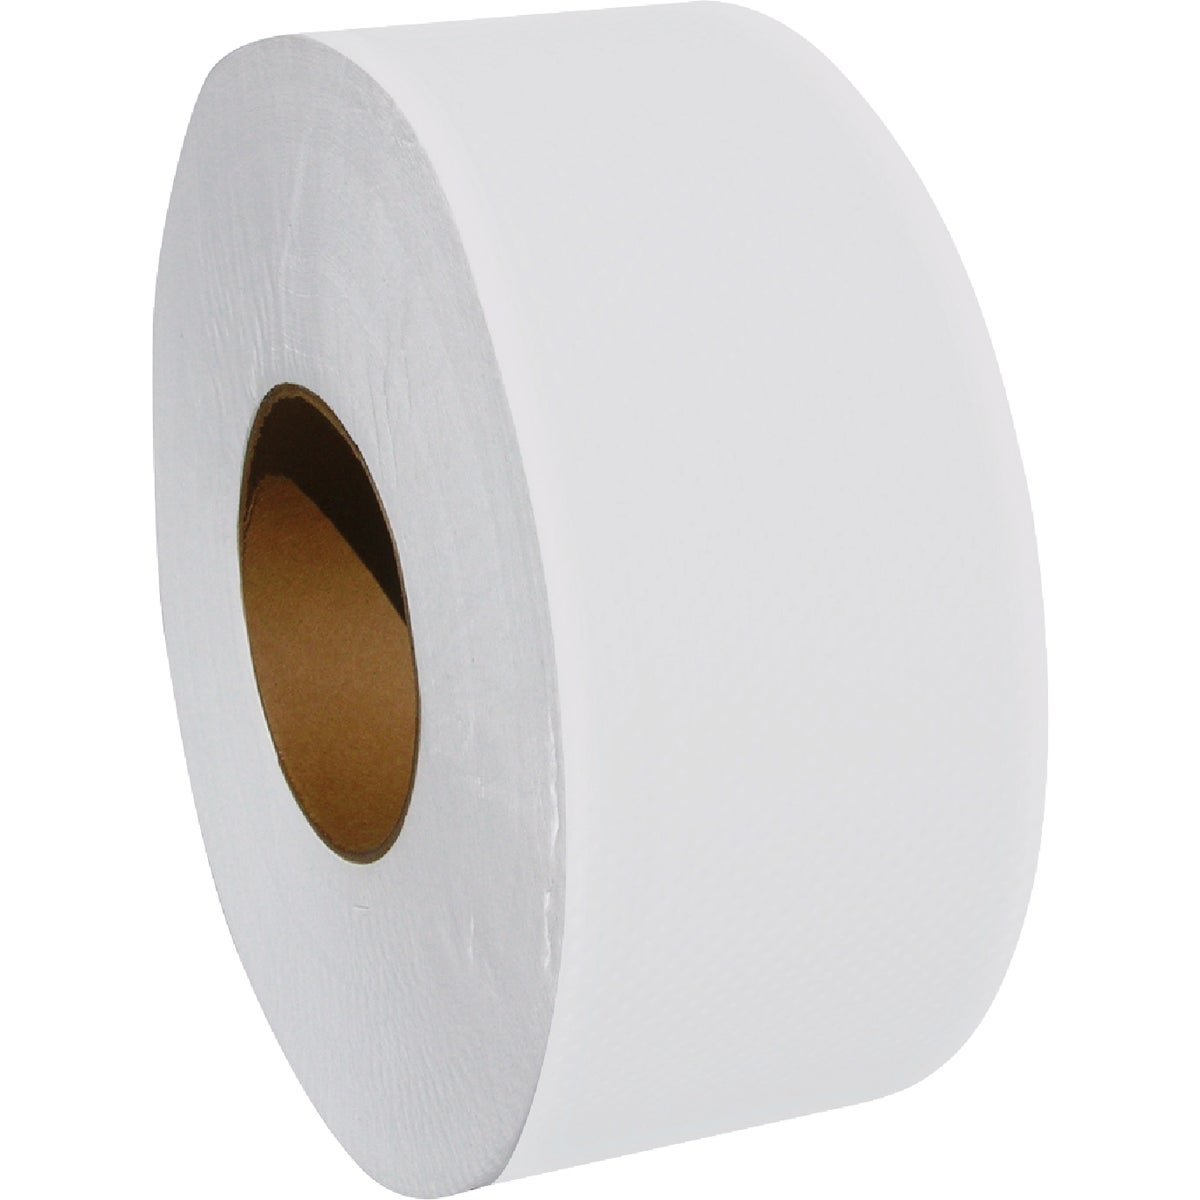 Empress 1000 Ft. Commercial Dispenser Toilet Paper (12 Jumbo Rolls)